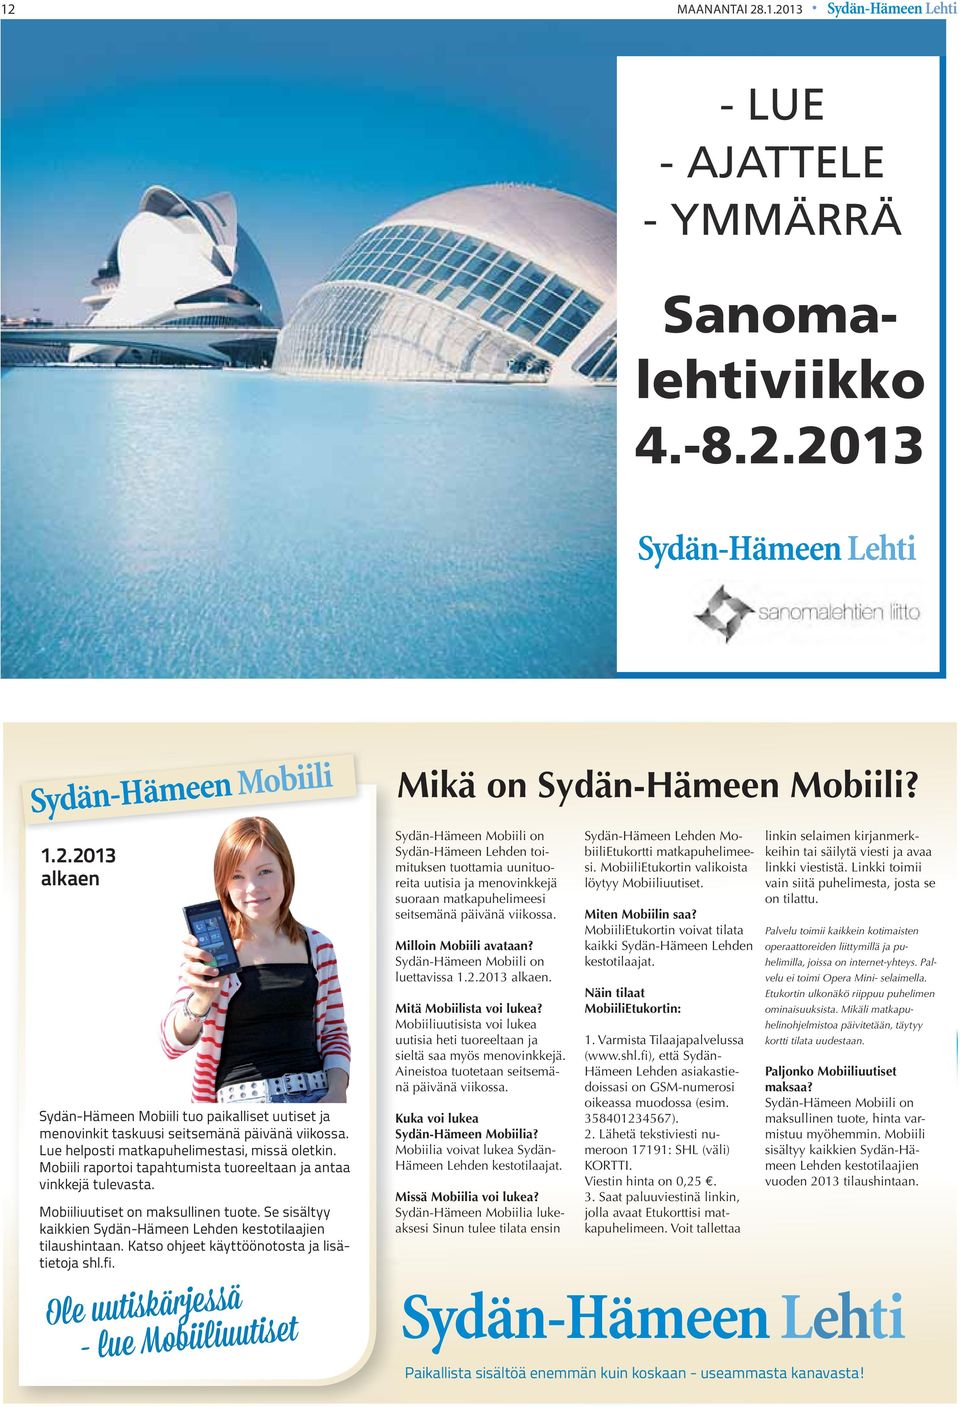 2013 Sydän-Hämeen Lehti 1.2.2013 alkaen Sydän-Hämeen Mobiili tuo paikalliset uutiset ja meno vinkit taskuusi seitsemänä päivänä viikossa. Lue helposti matkapuhelimestasi, missä oletkin.